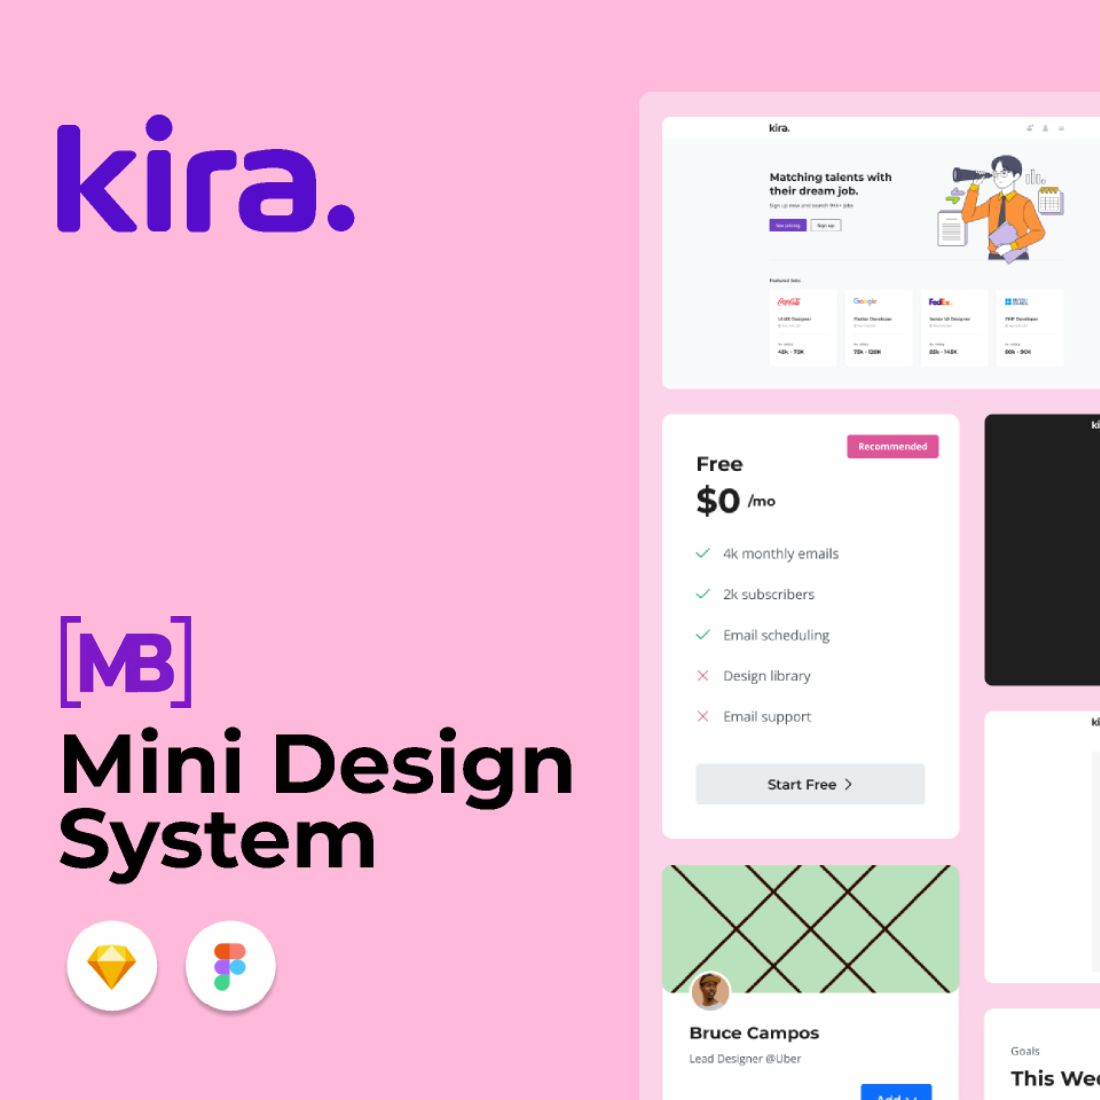 Kira Minimalist Design System.